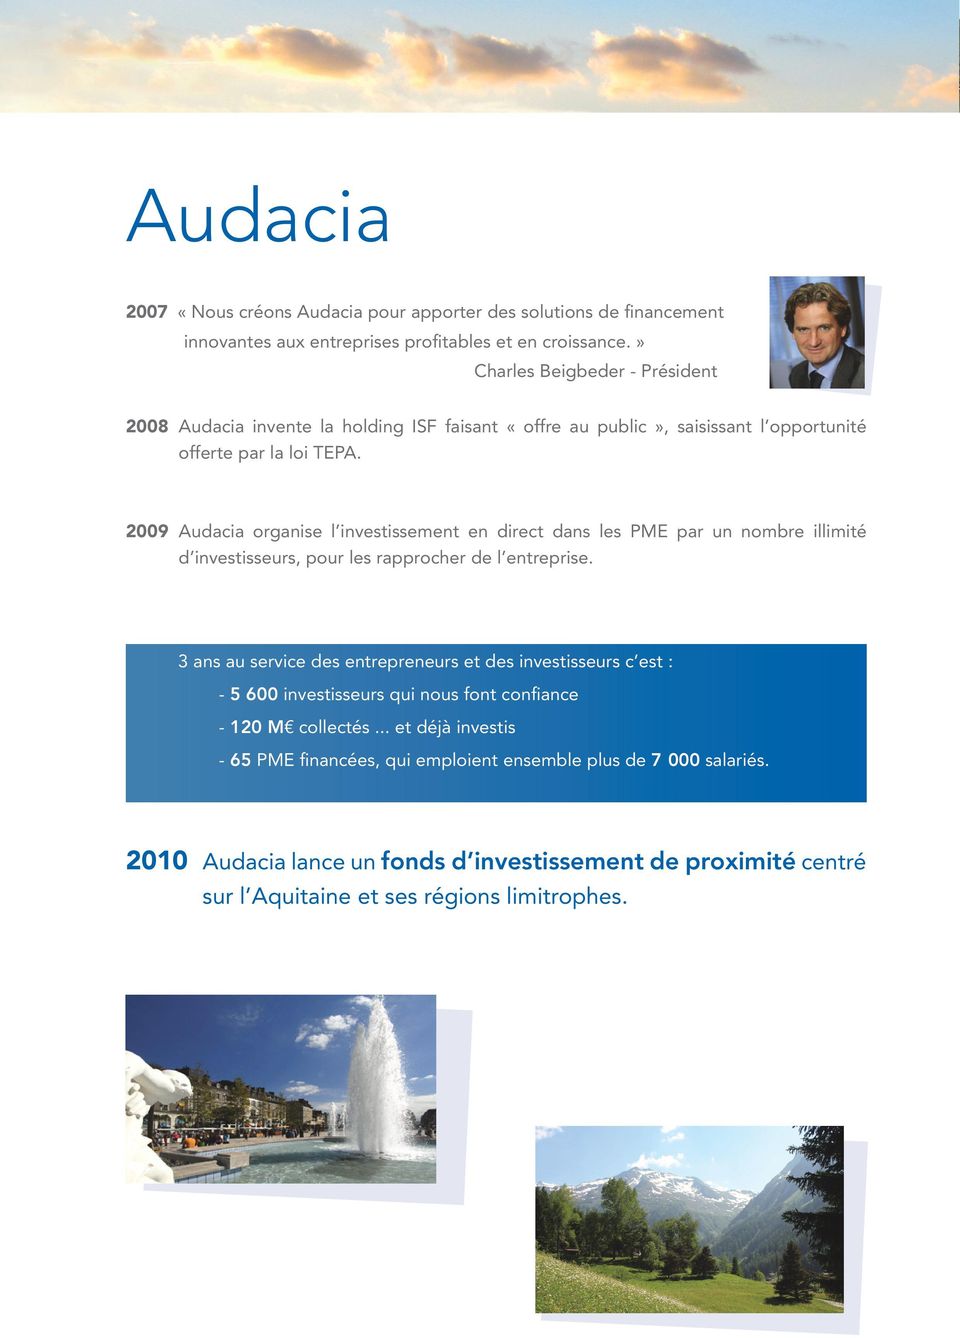 2009 Audacia organise l investissement en direct dans les PME par un nombre illimité d investisseurs, pour les rapprocher de l entreprise.